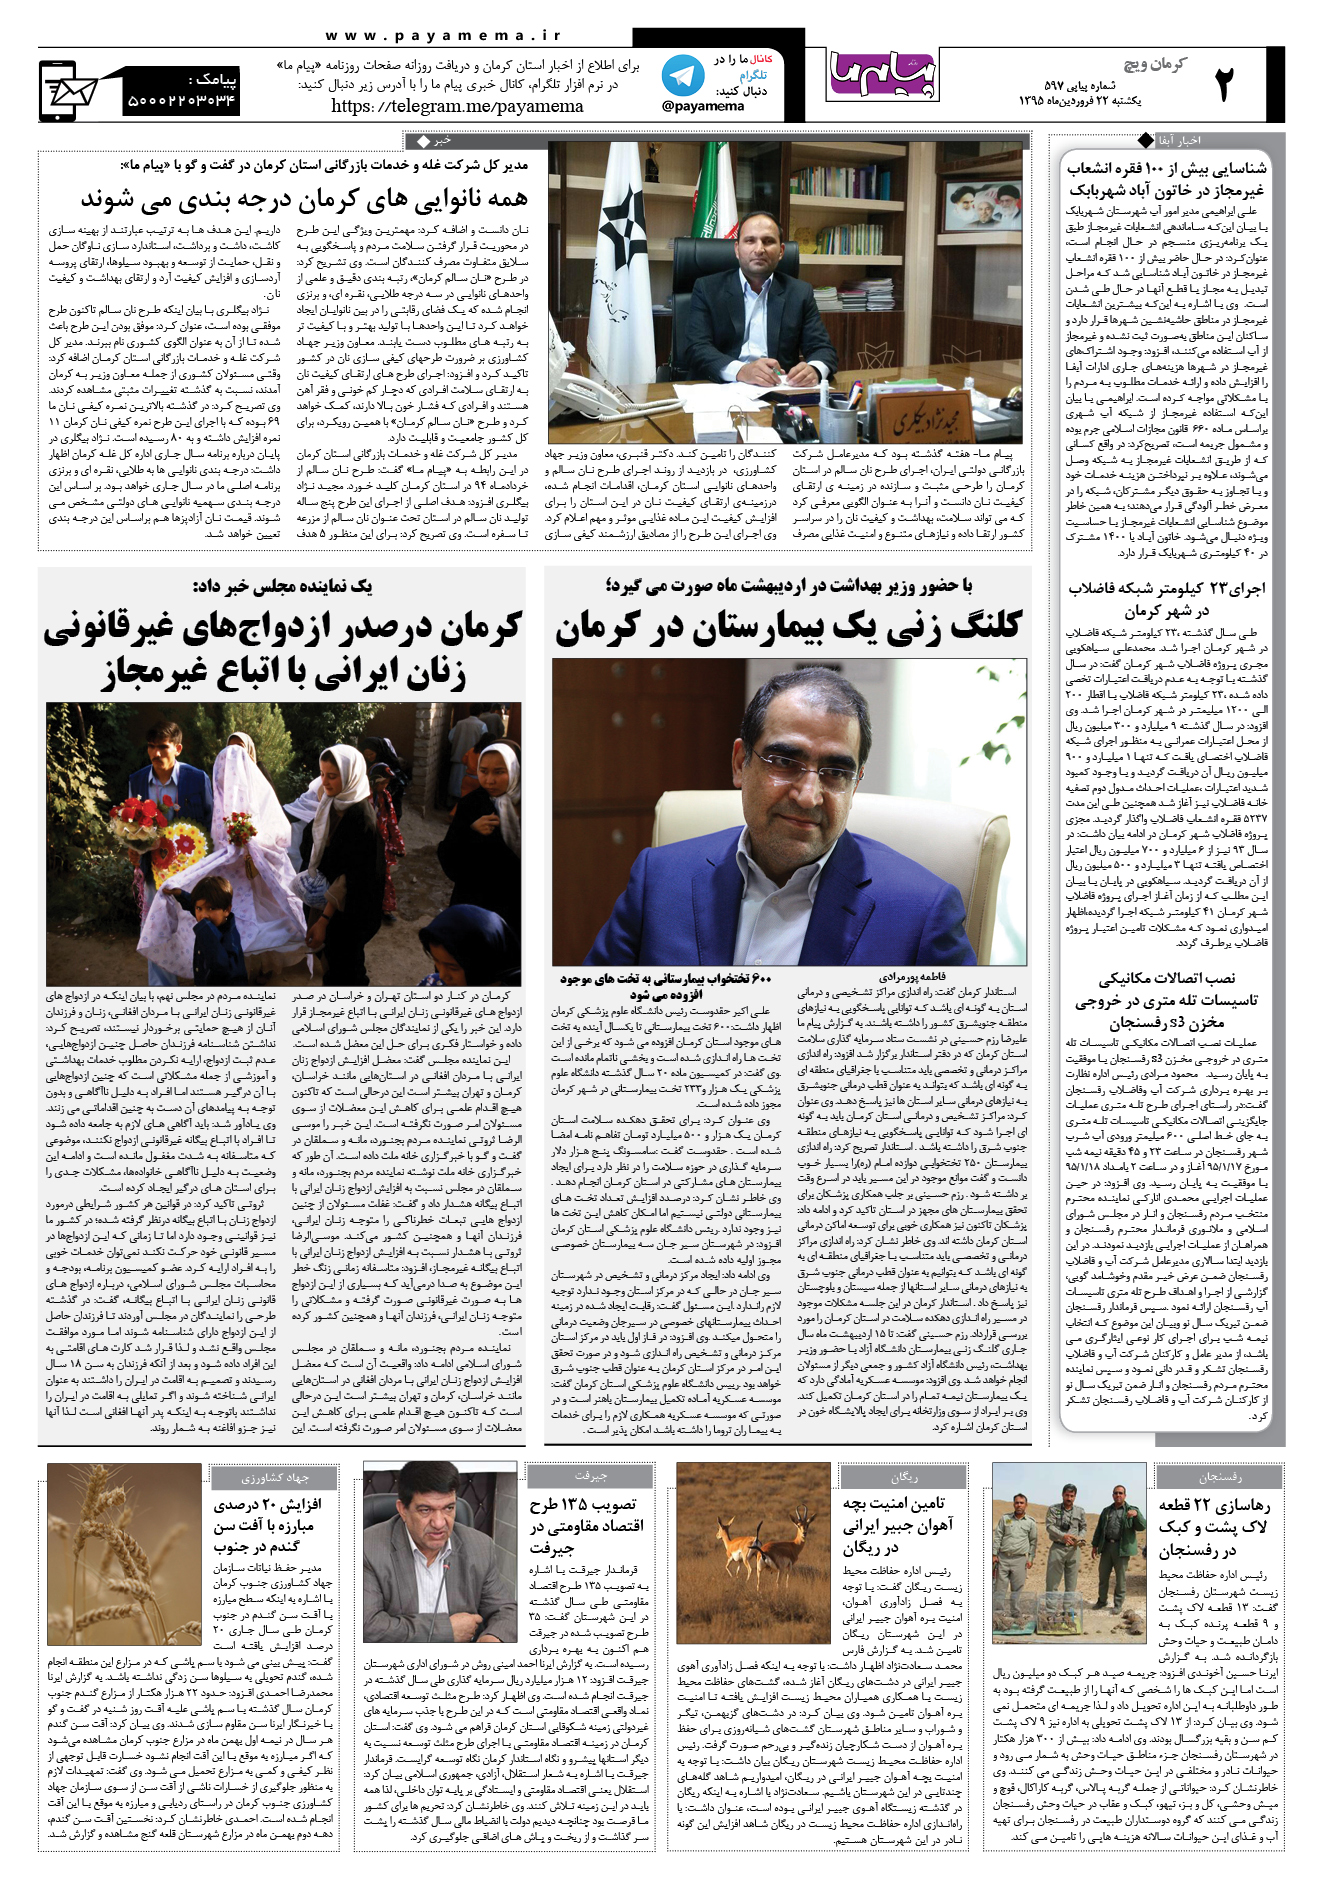 صفحه کرمان ویج شماره 597 روزنامه پیام ما